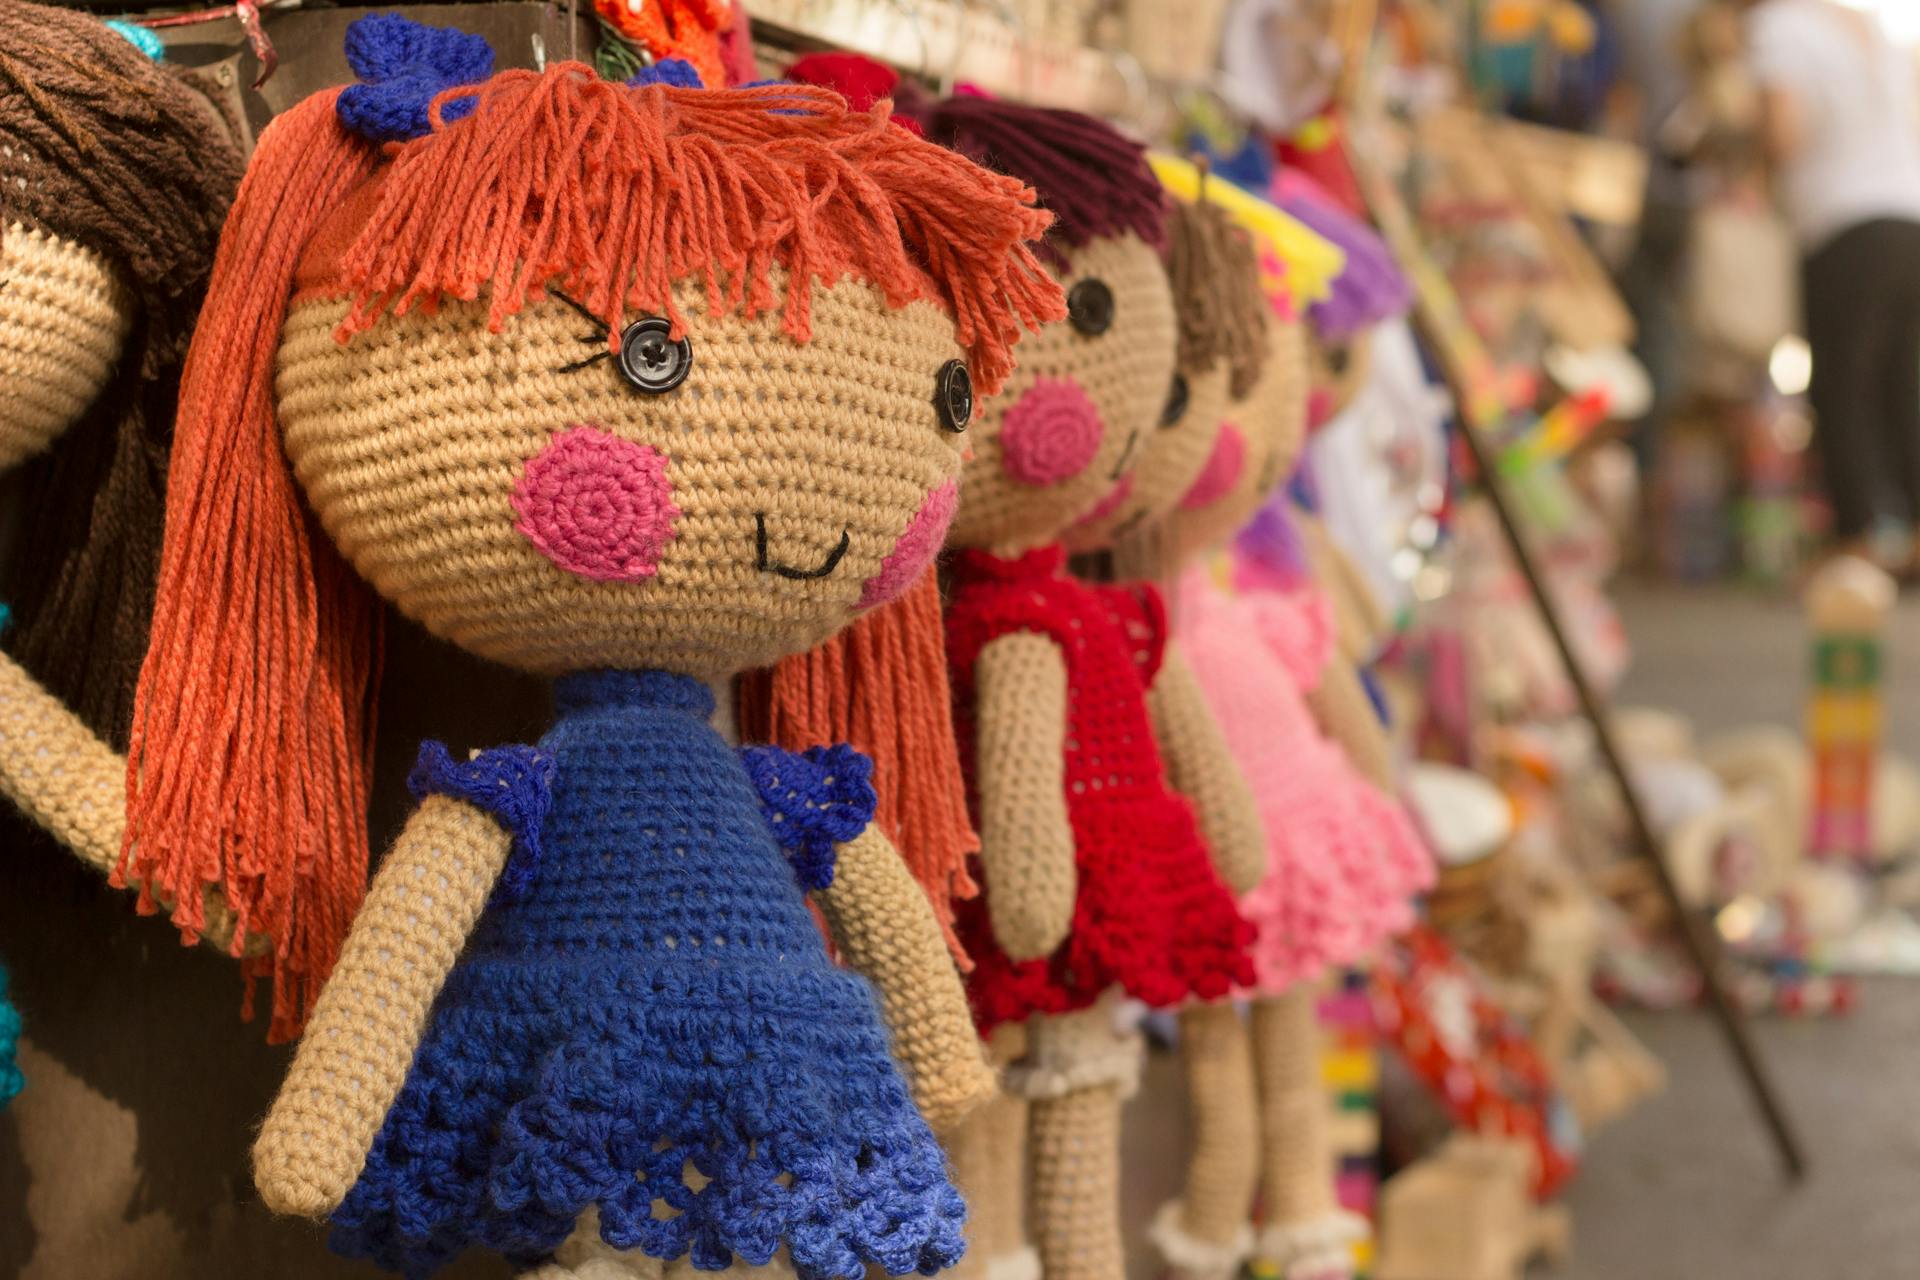 Muñecas de crochet colgadas en una tienda | Foto: Pexels